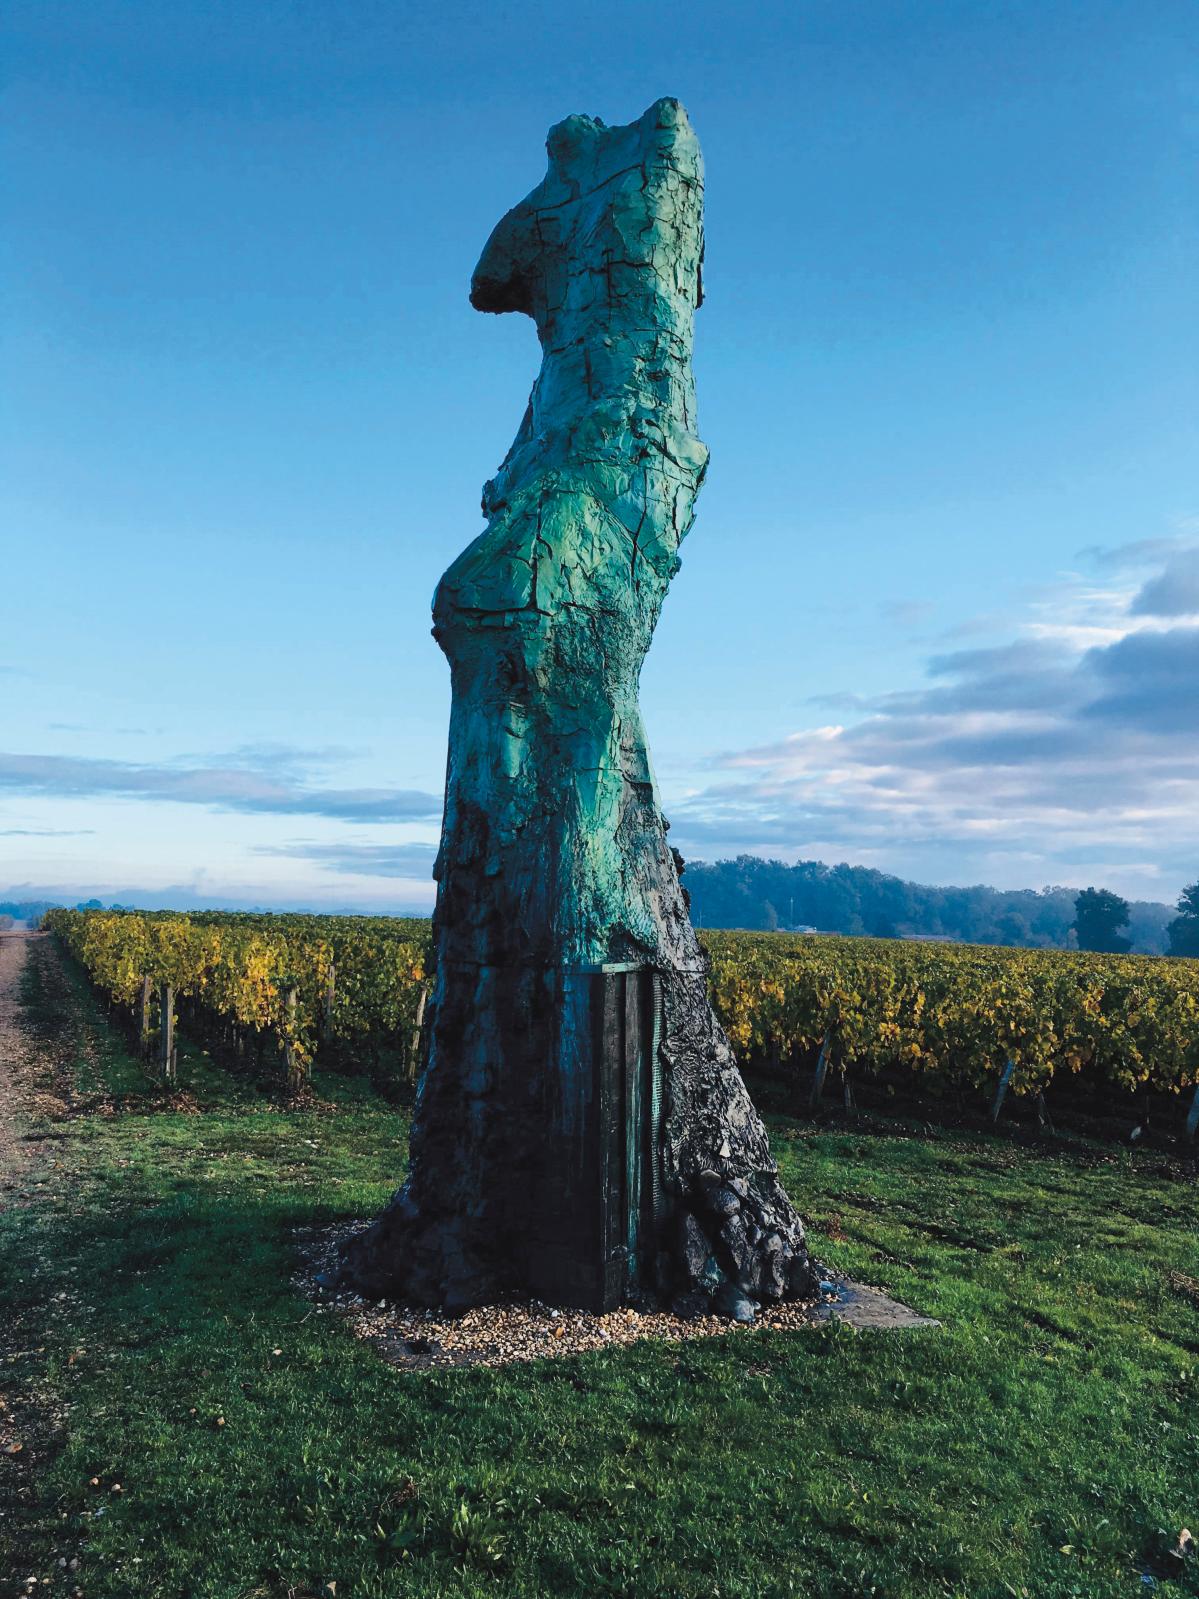 Dans les vignobles du bordelais, on cultive l’ivresse de l’art contemporain…